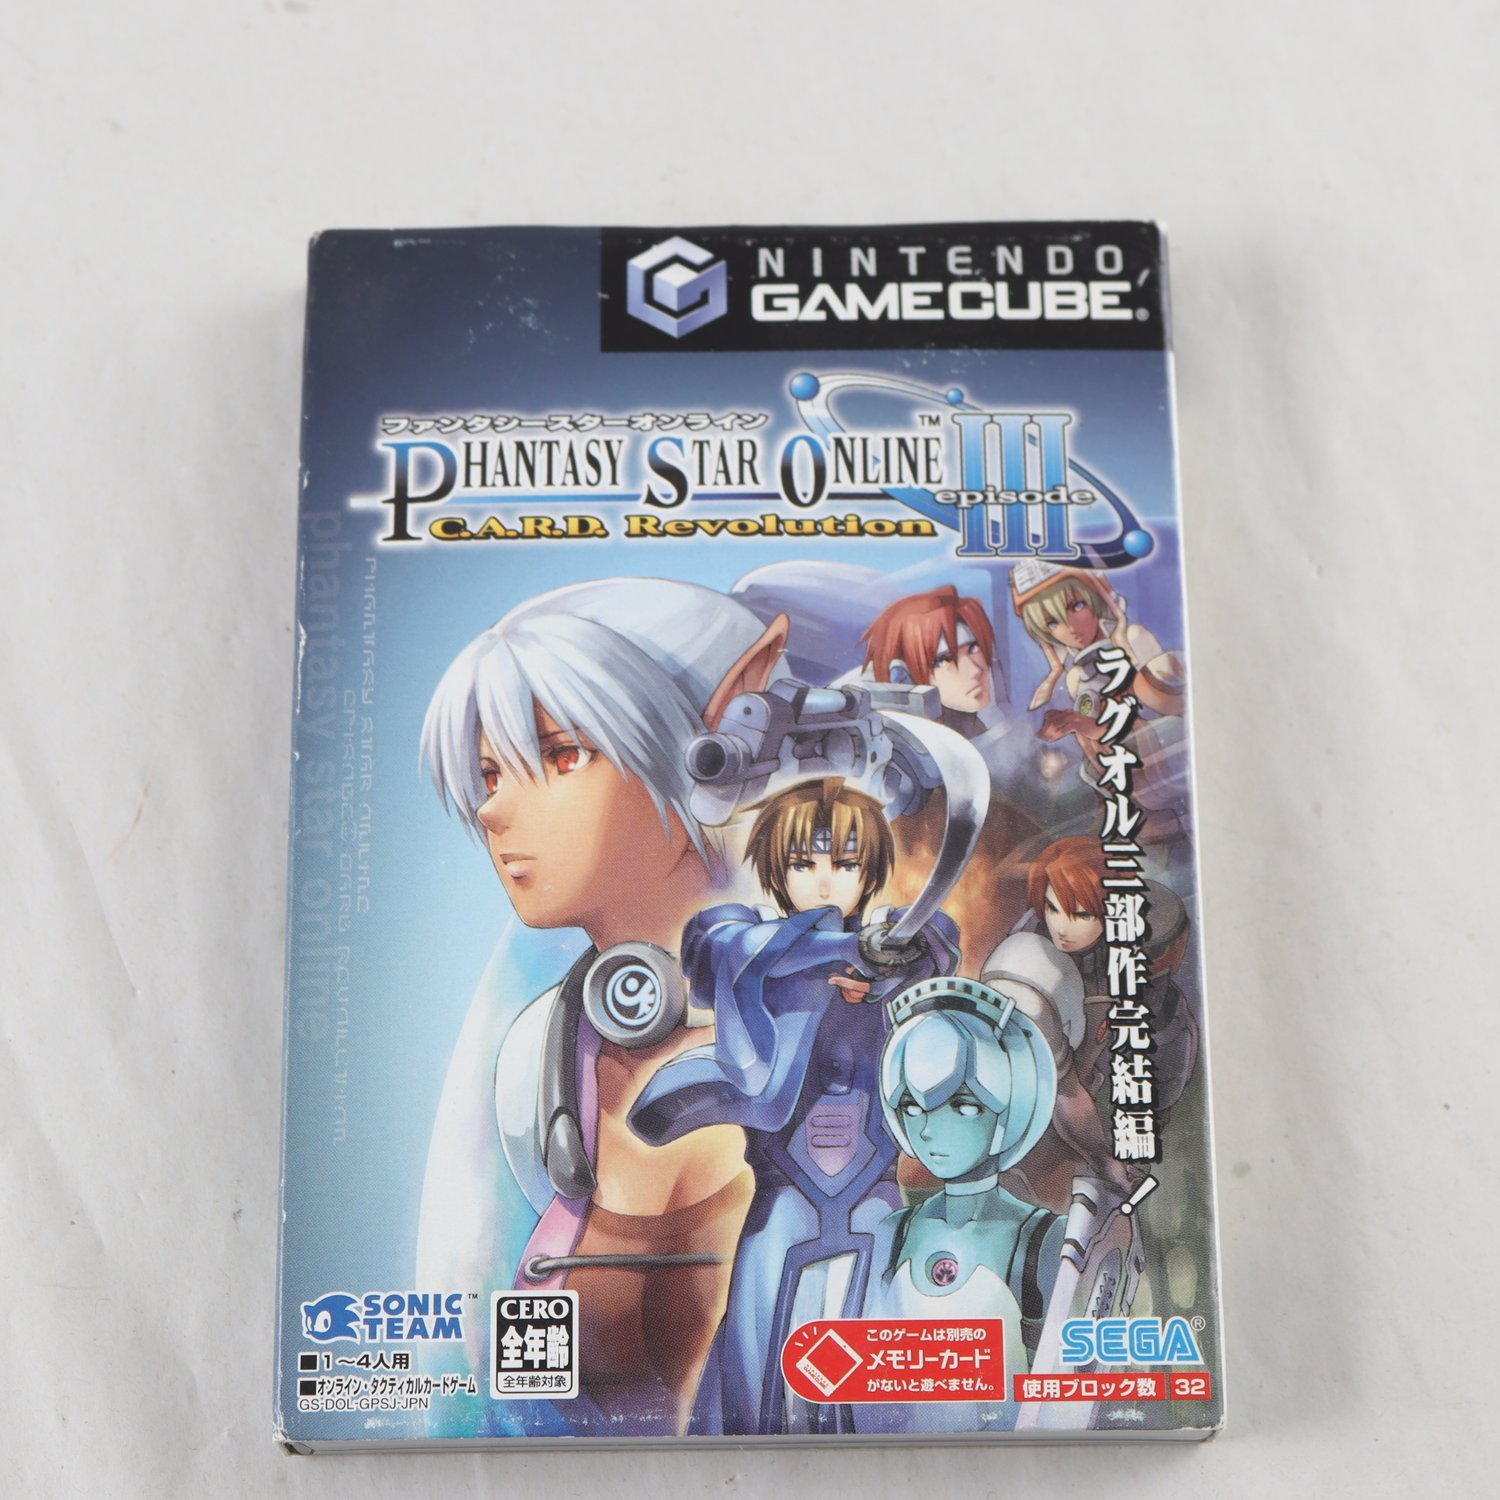 Spel, Nintendo gamecube, Phantasy Star Online III, japanskt